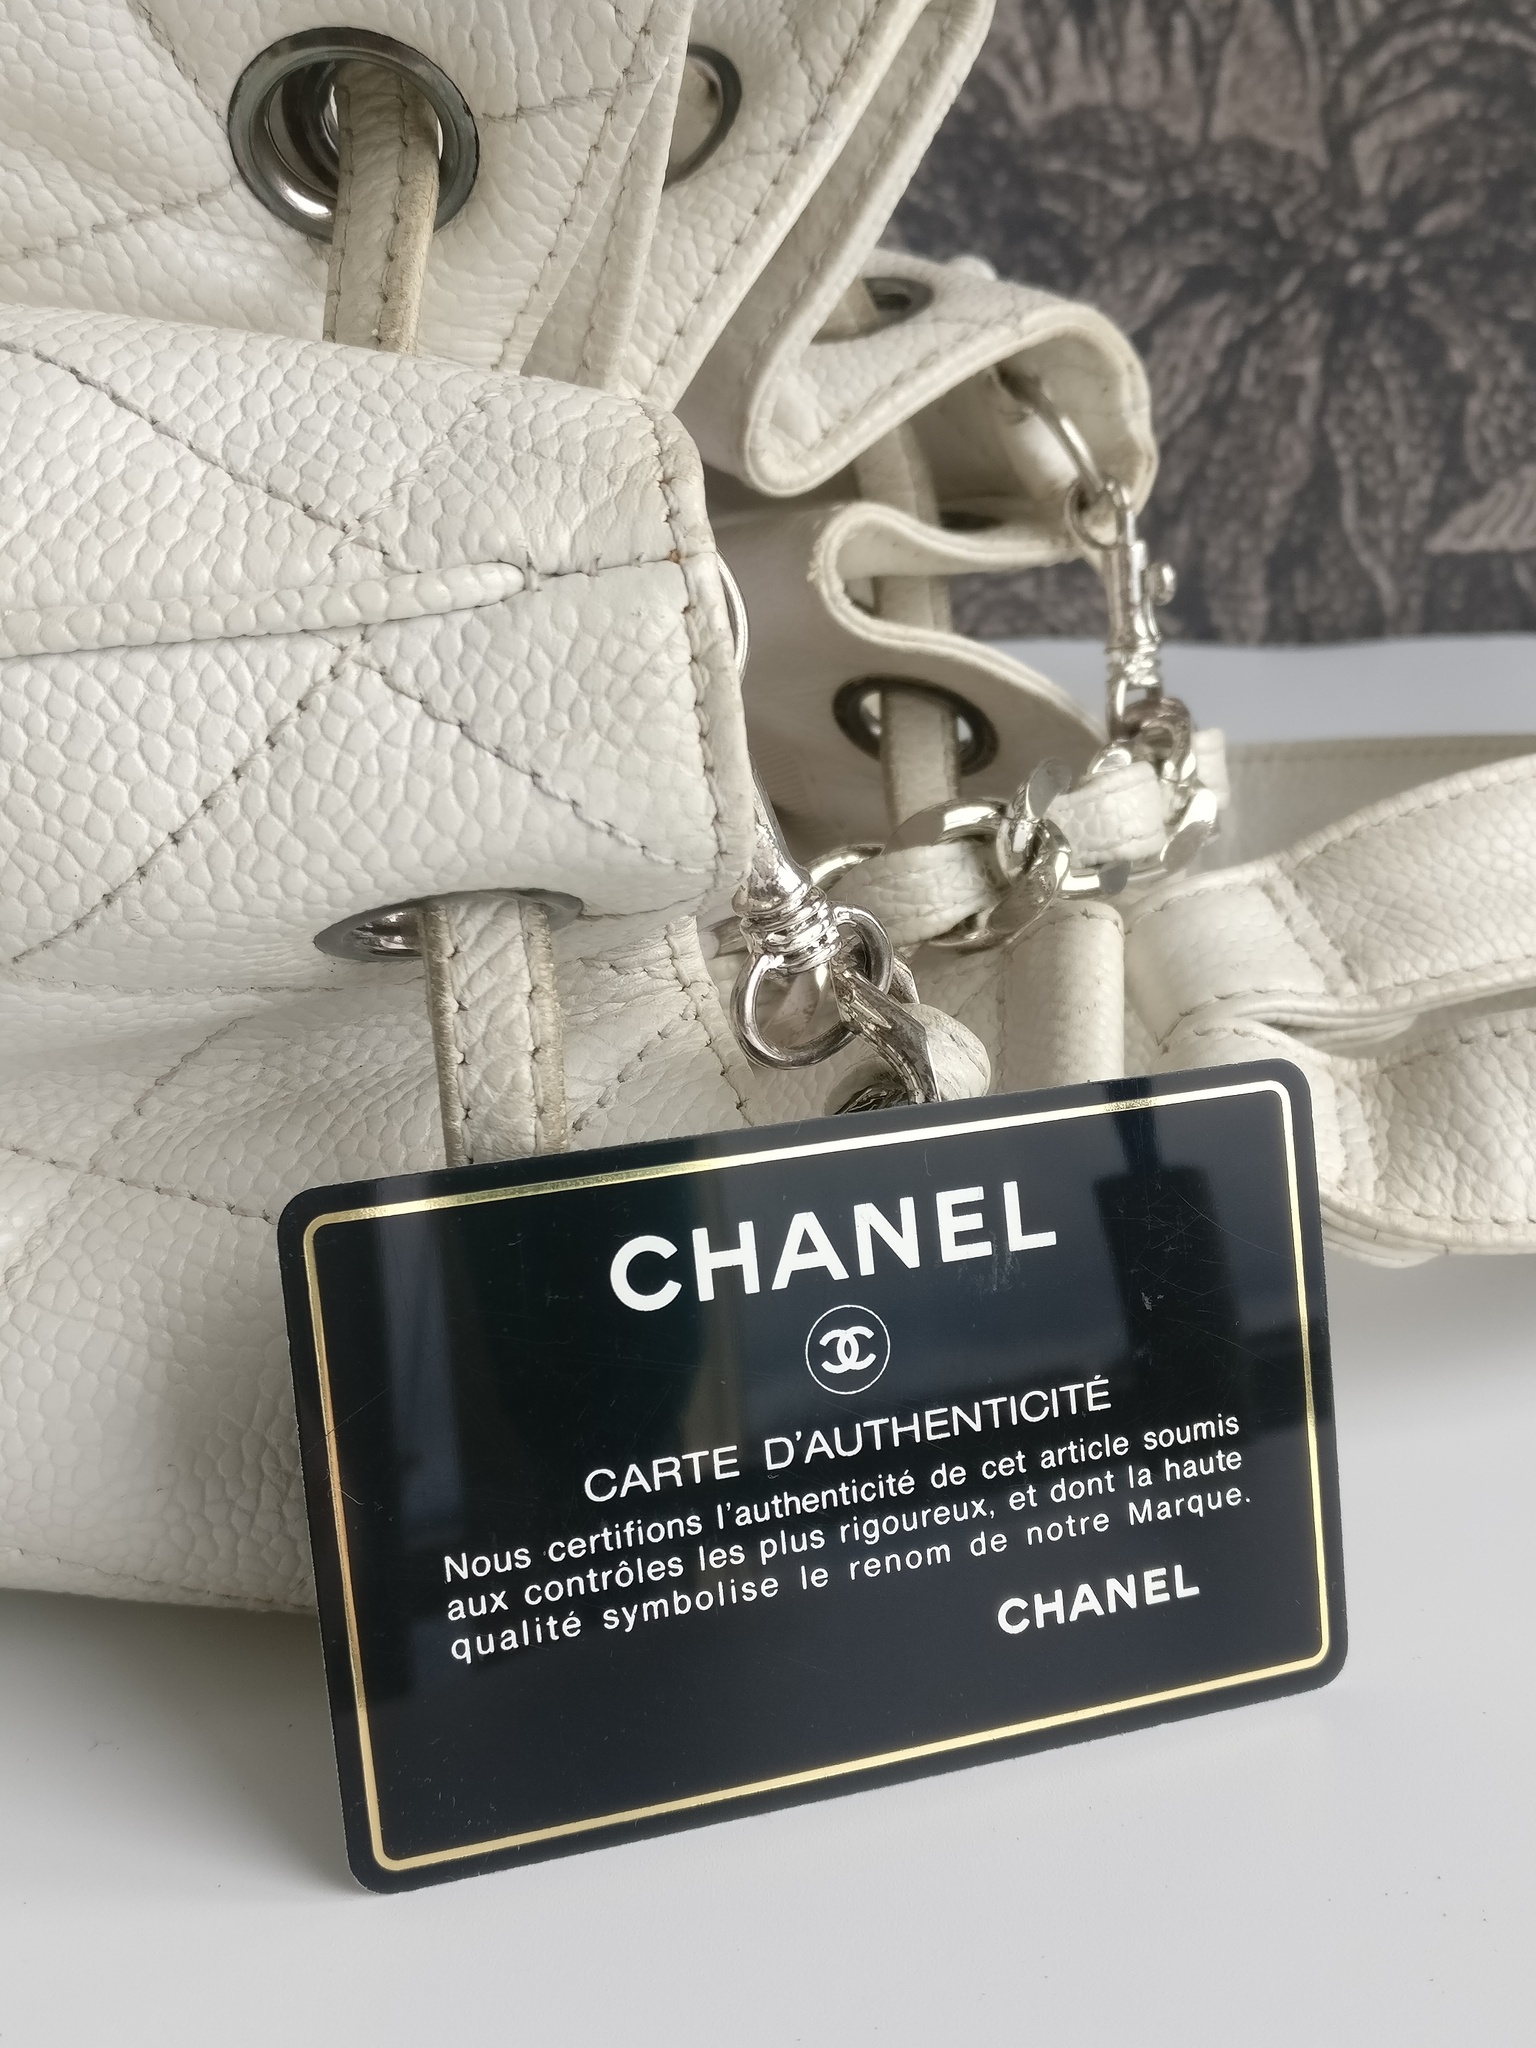 55 172 bilder fotografier och illustrationer med Chanel Bag Street Style   Getty Images